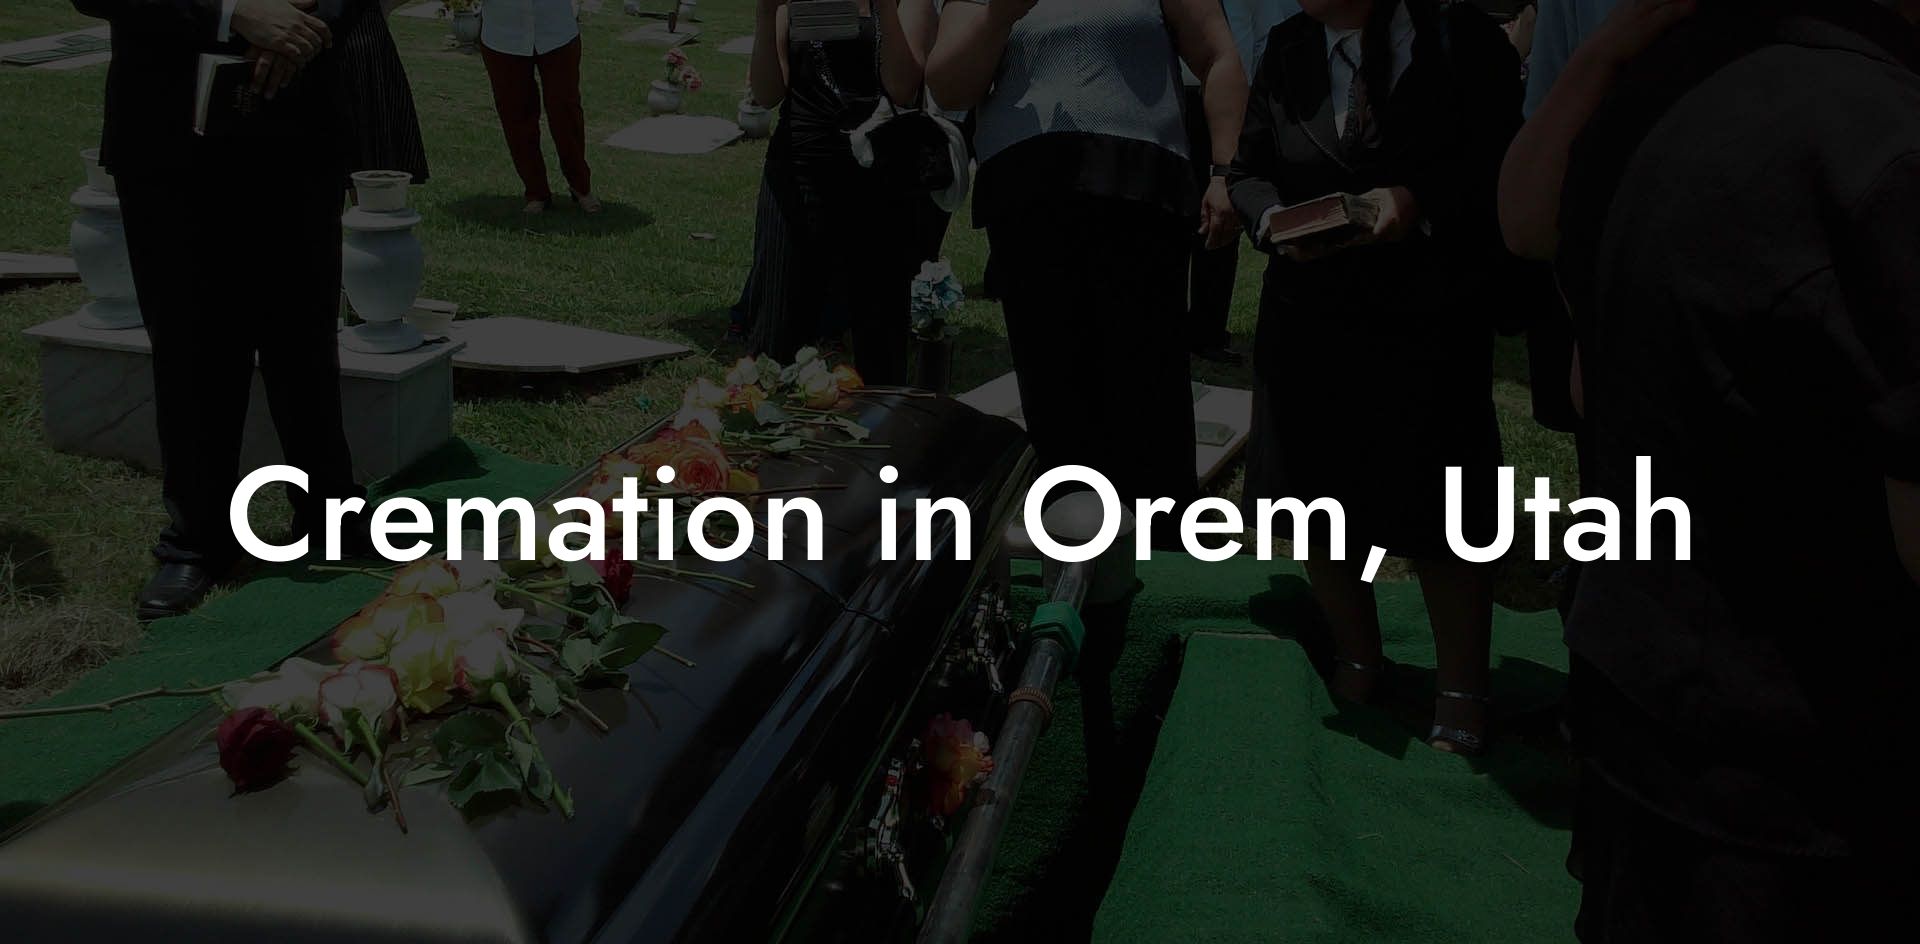 Cremation in Orem, Utah